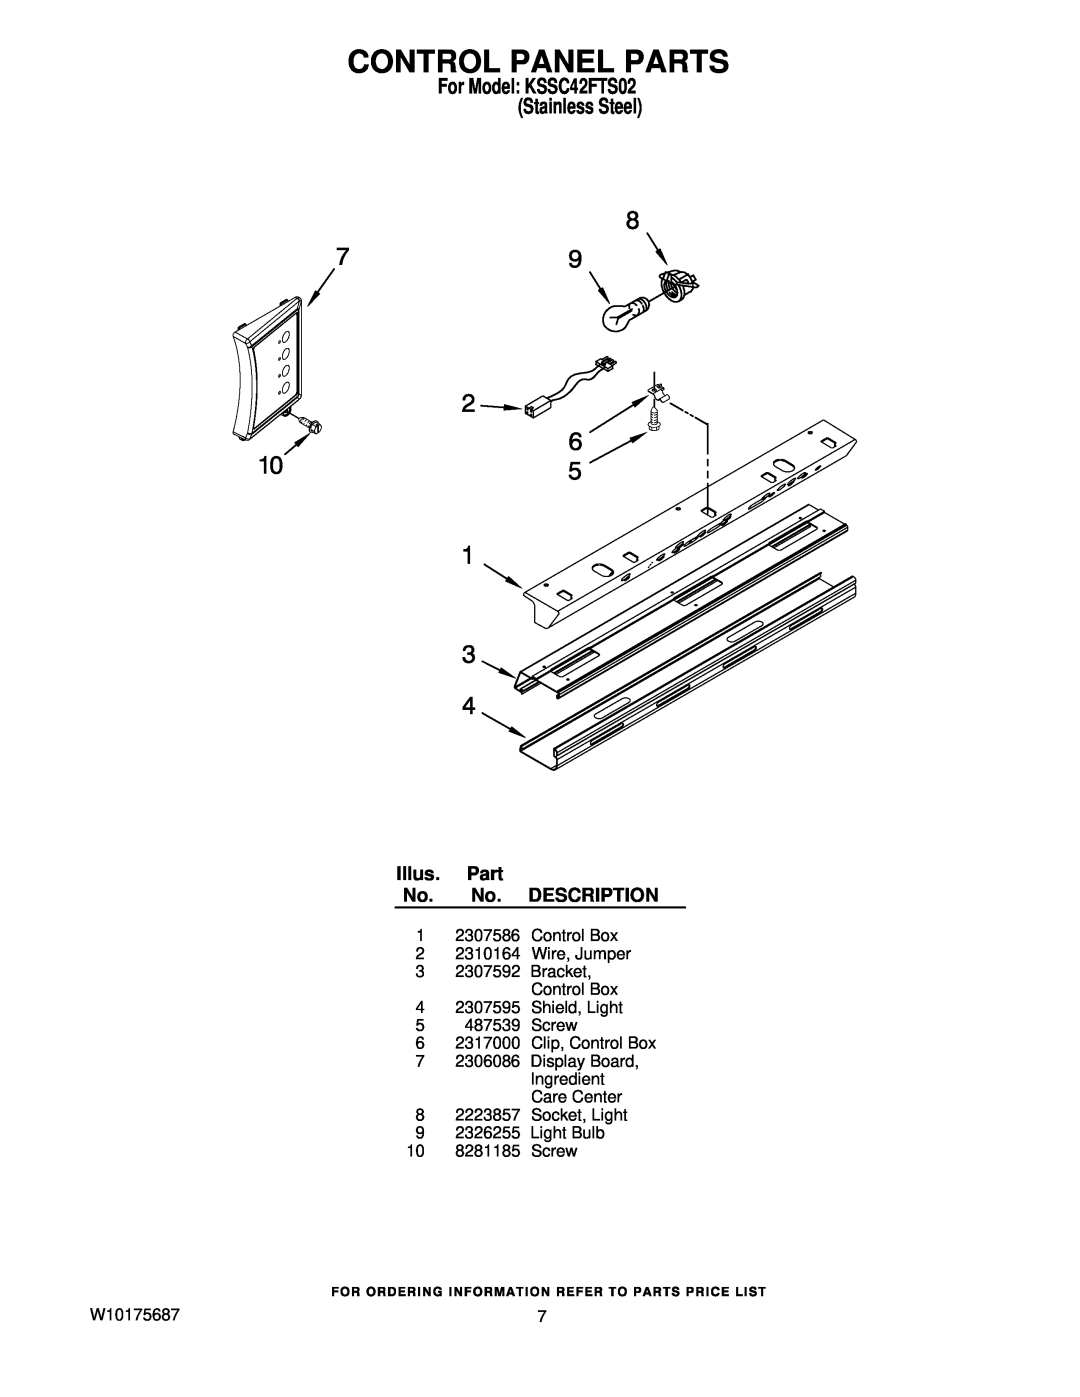 KitchenAid manual Control Panel Parts, For Model KSSC42FTS02 Stainless Steel, Illus. Part No. No. DESCRIPTION 